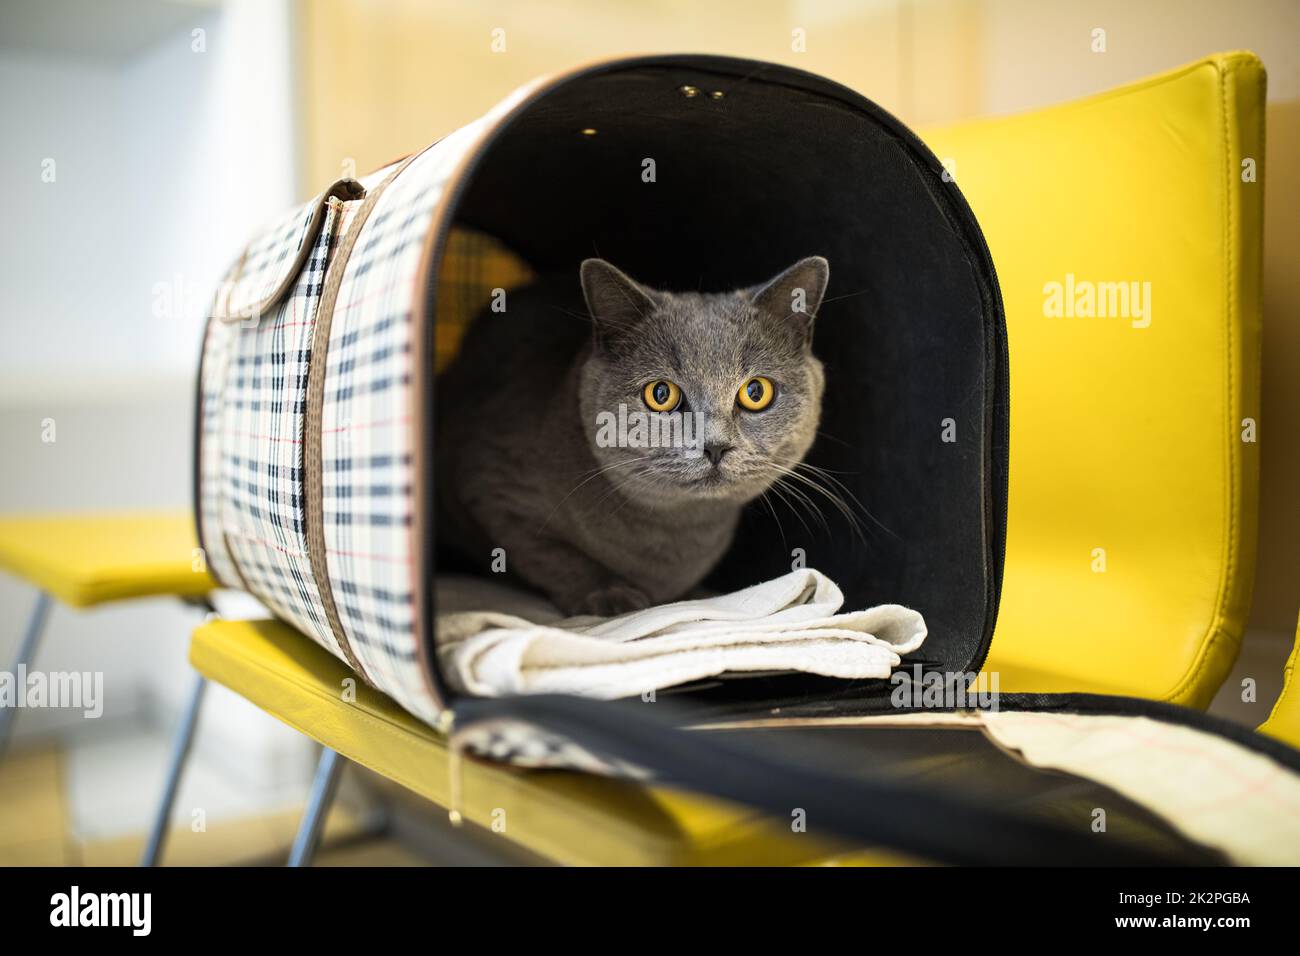 Chat dans une clinique vétérinaire. Feline attente patiente dans la salle d'attente d'une clinique vétérinaire Banque D'Images